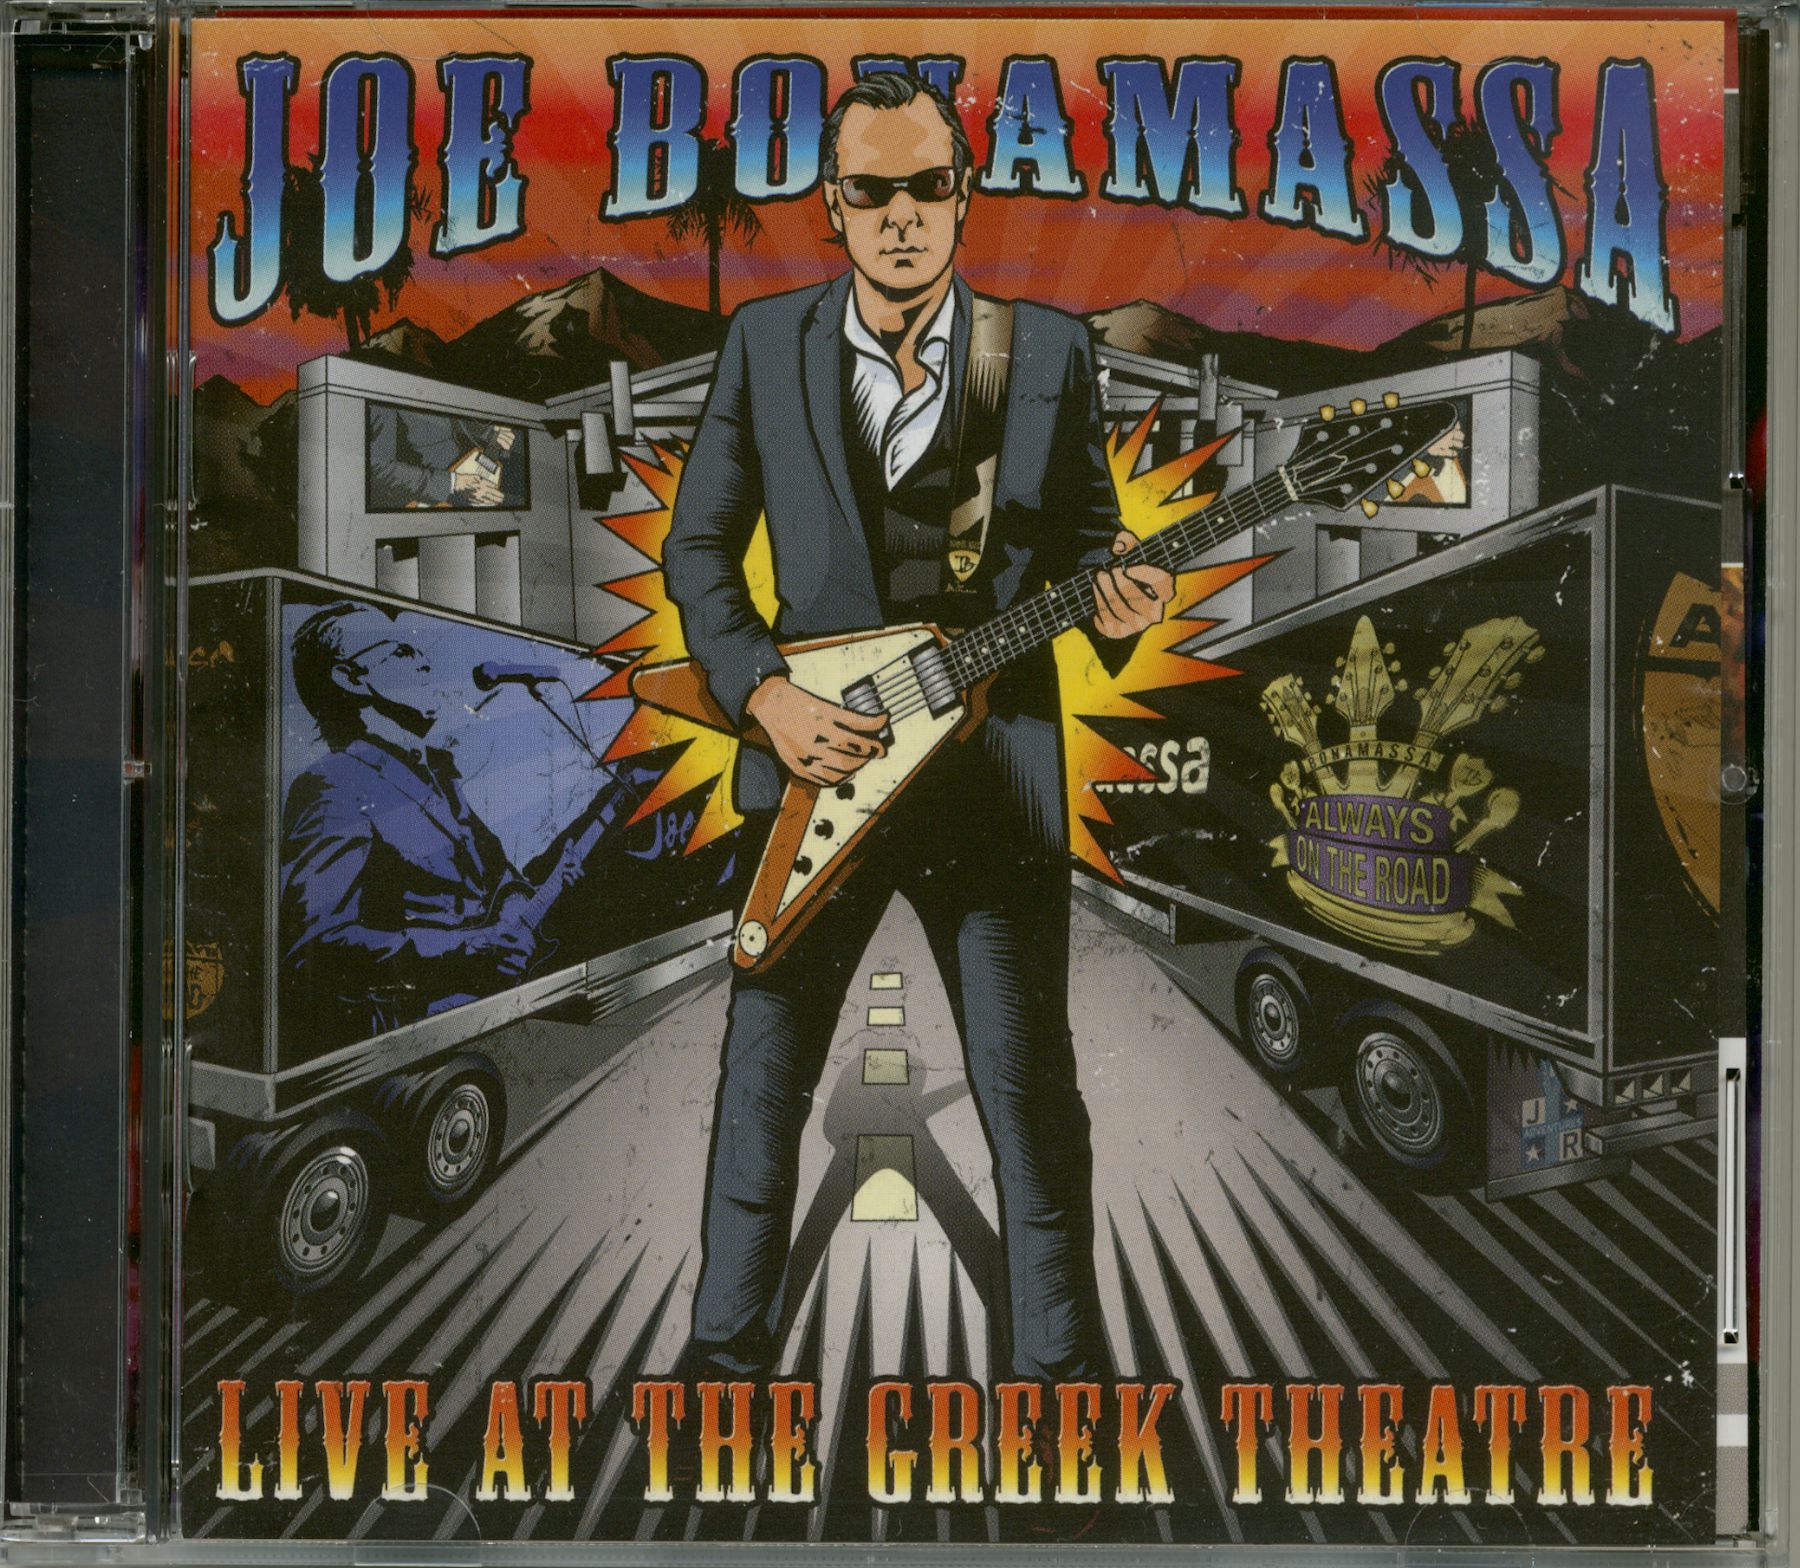 Joe Bonamassa CD: Live At The Greek Theatre (2-CD) - Bear Family Records - Joe Bonamassa Live At The Greek Theatre